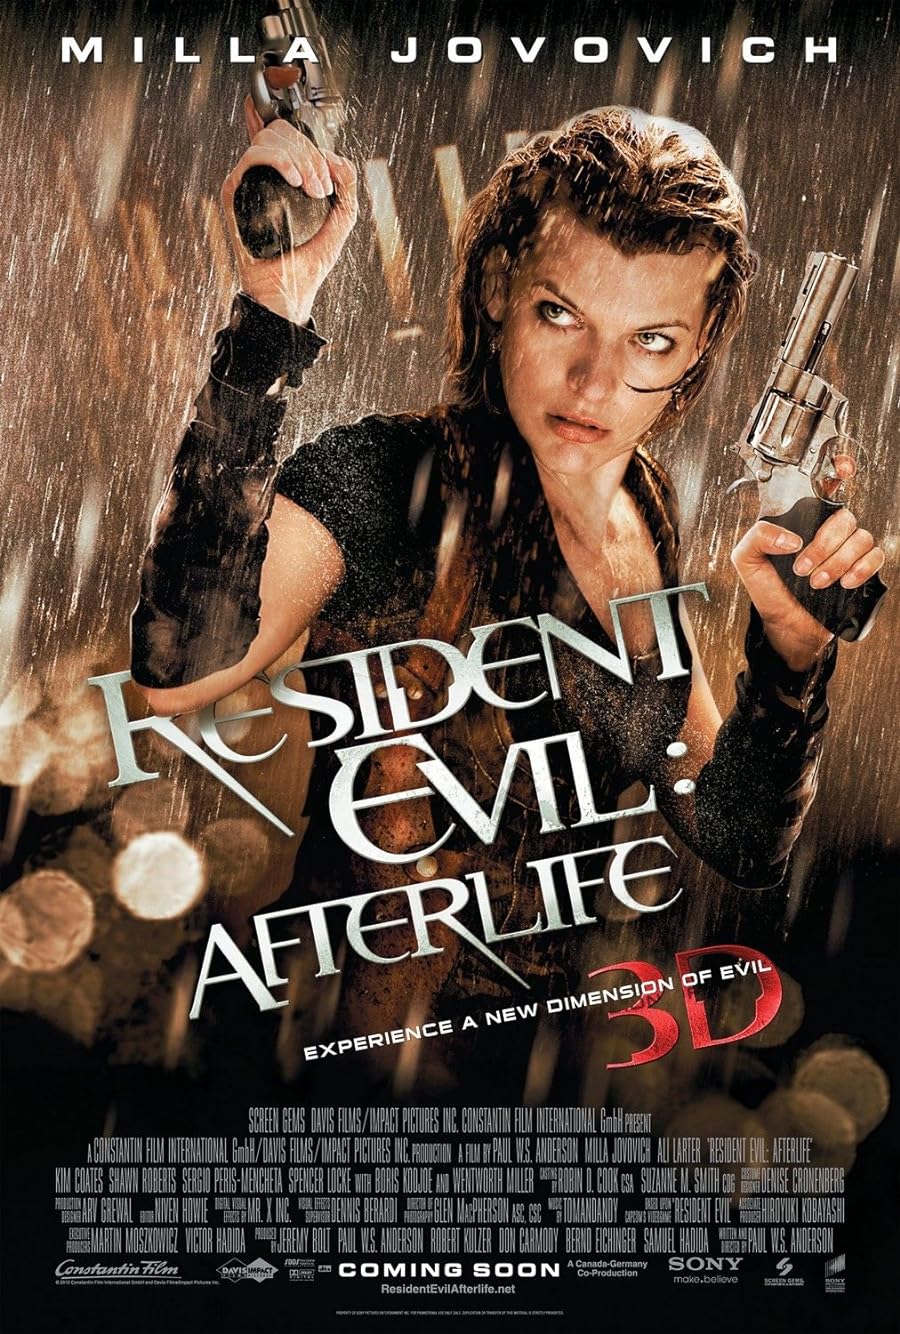 دانلود فیلم Resident Evil: Afterlife 2010